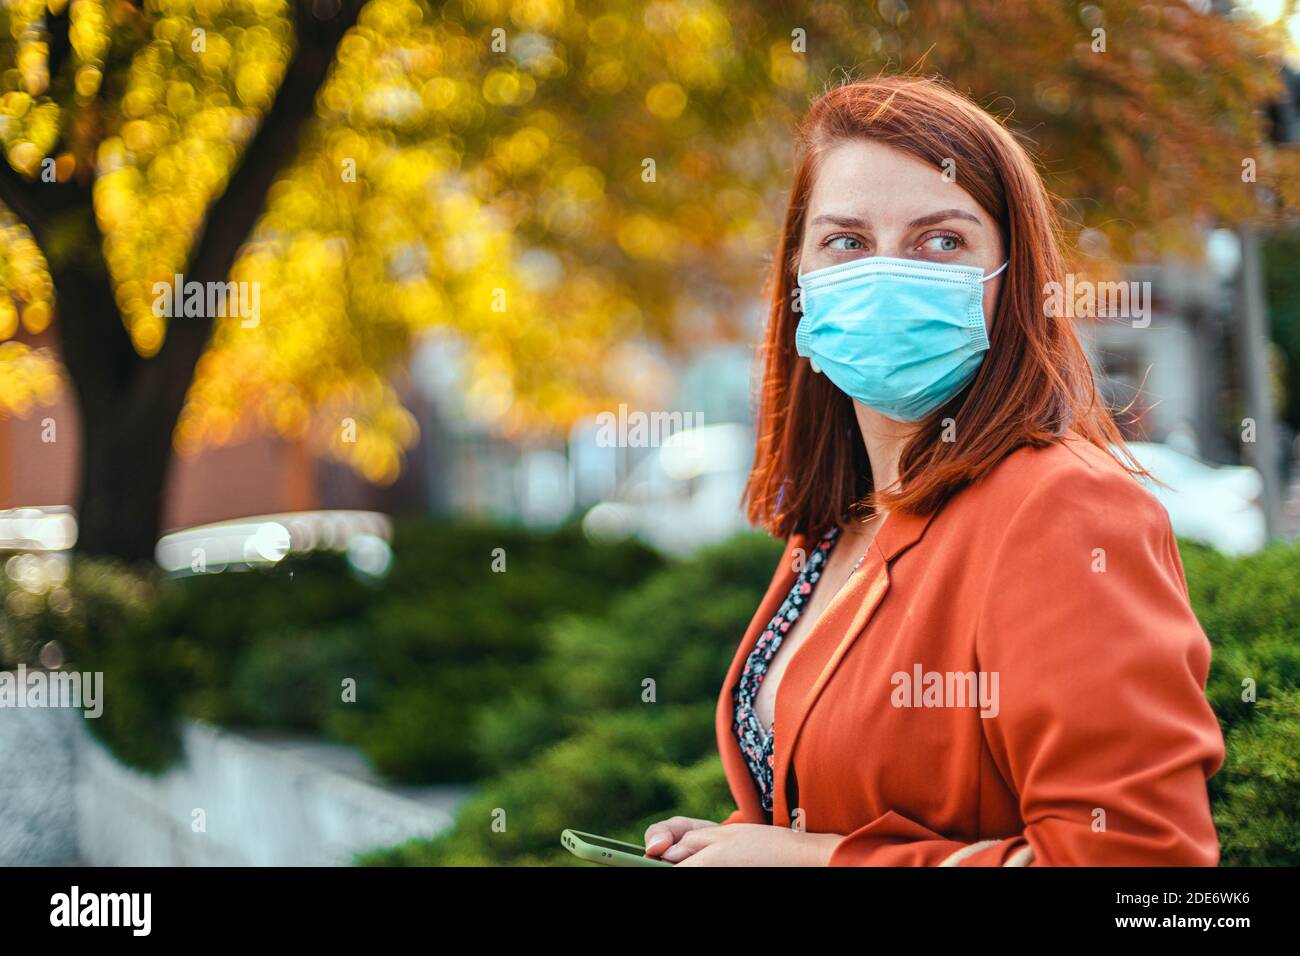 Coronavirus, covid 19 Konzept. Junges Mädchen in medizinischer Maske und Anzug hält ein Smartphone in den Händen und schaut zur Seite auf der Straße Stockfoto